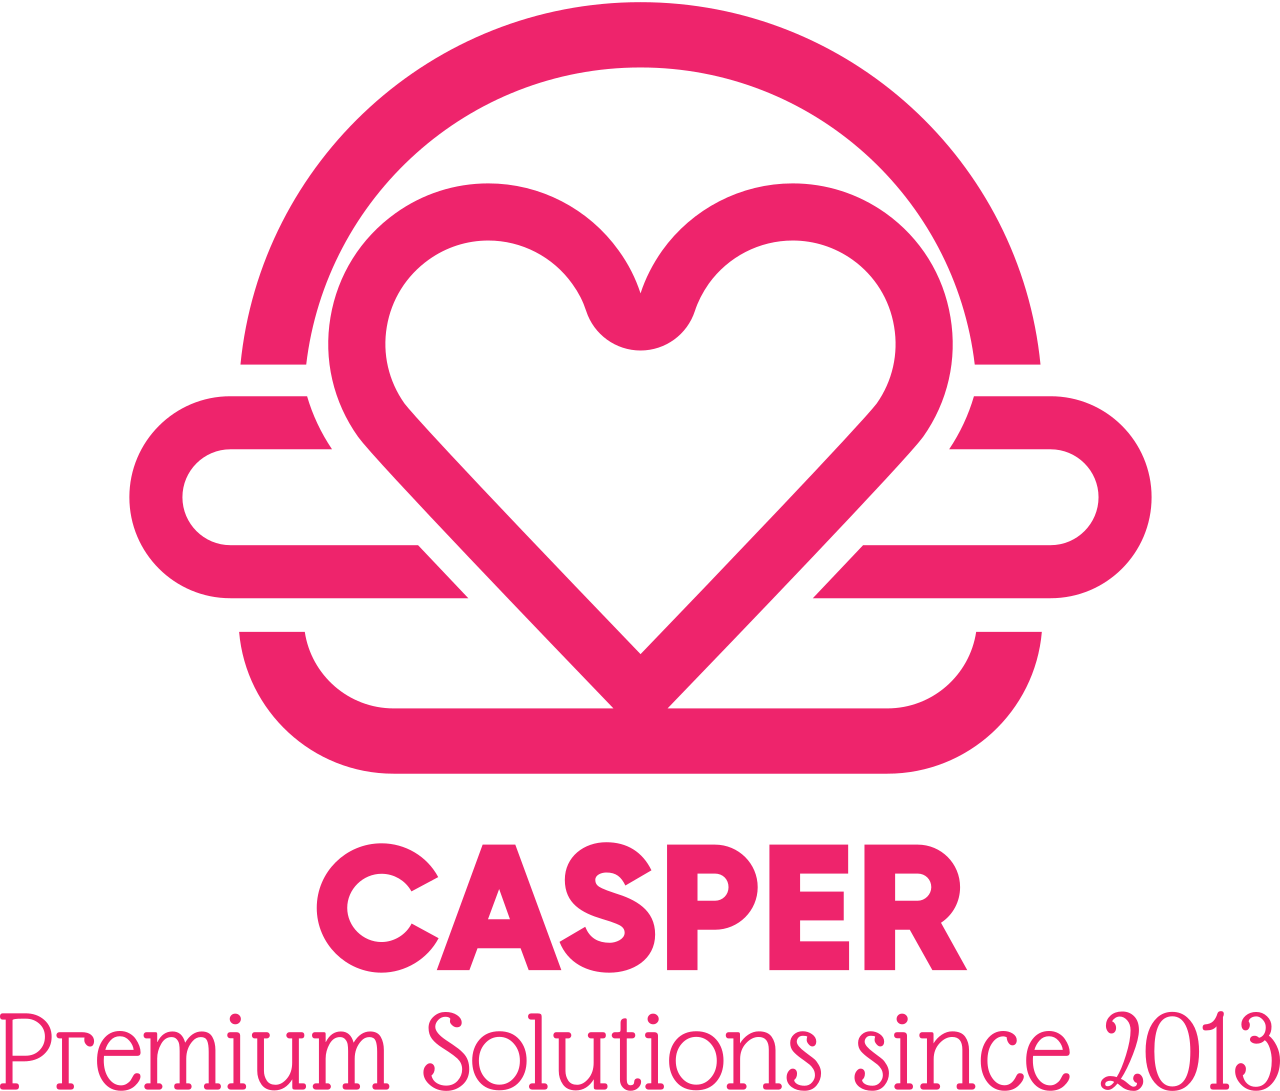 Casper's web page